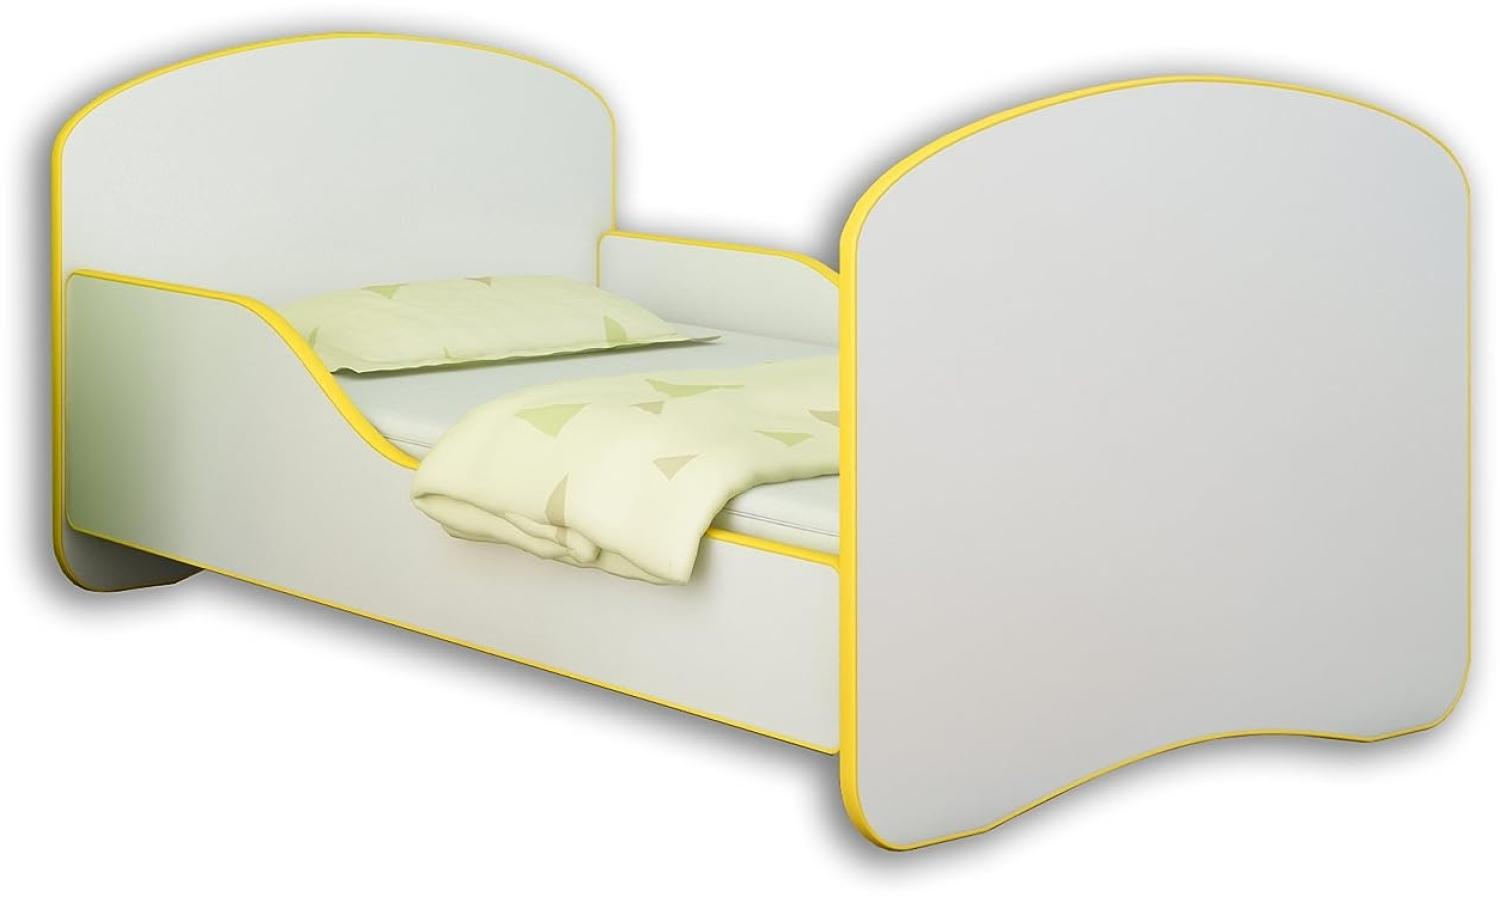 Jugendbett Kinderbett mit einer Schublade und Matratze Weiß ACMA I 140 160 180 (180x80 cm, Gelb) Bild 1